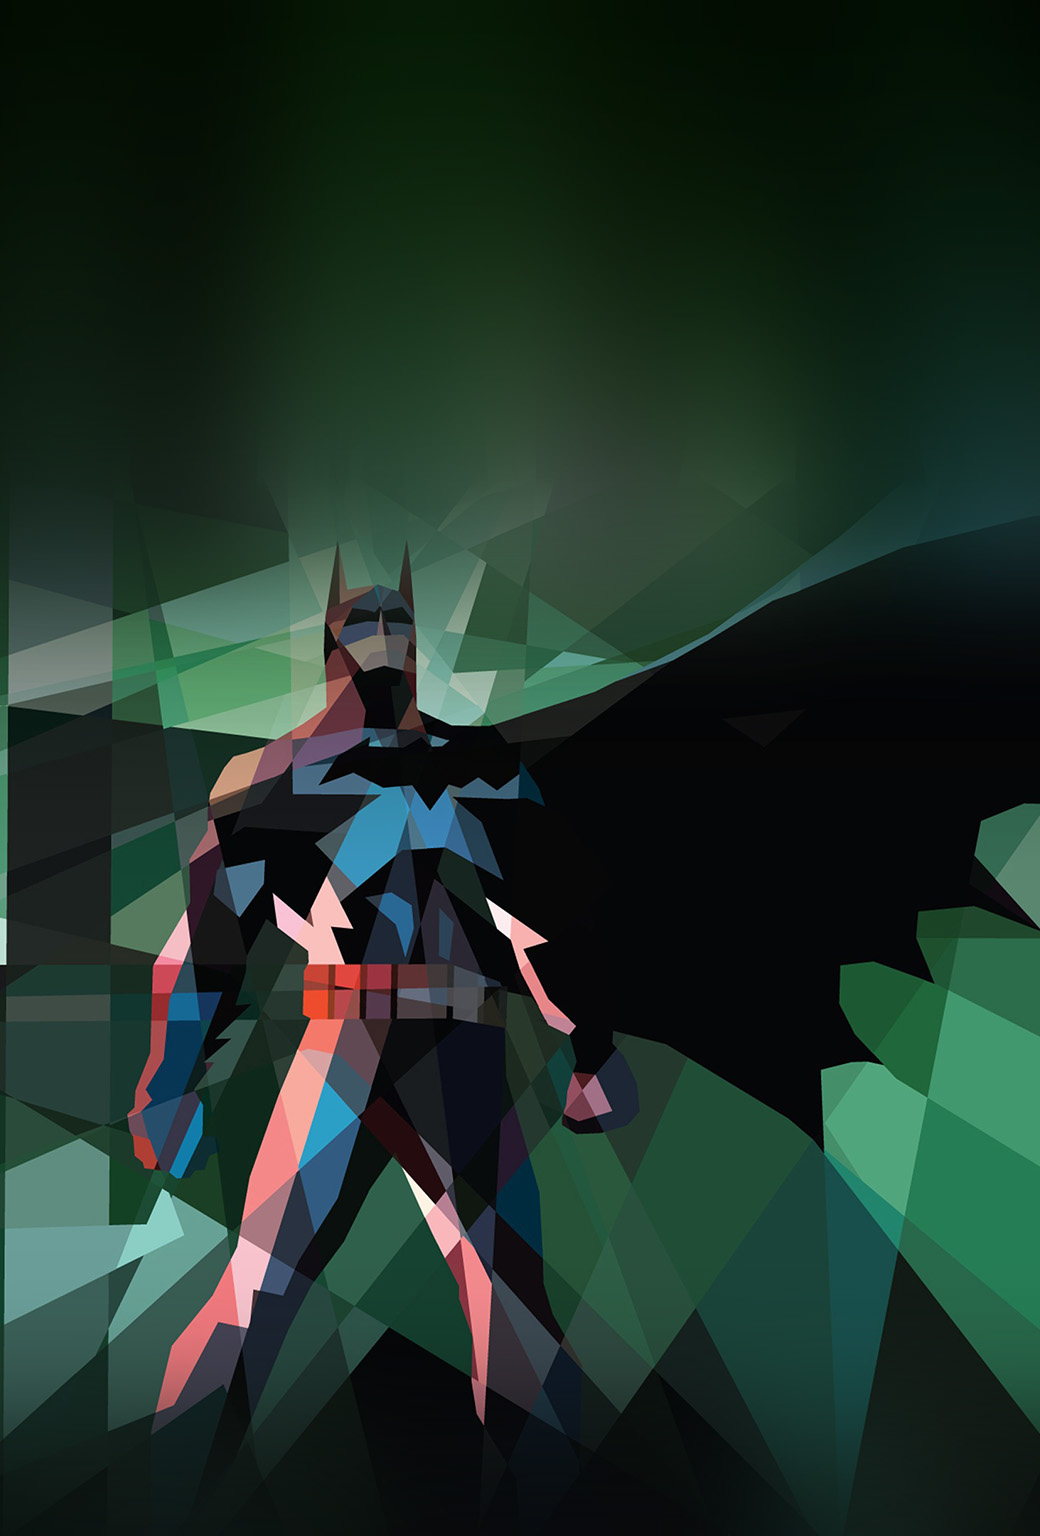 superhéroe fondo de pantalla para iphone,personaje de ficción,dibujos animados,hombre murciélago,ilustración,cg artwork